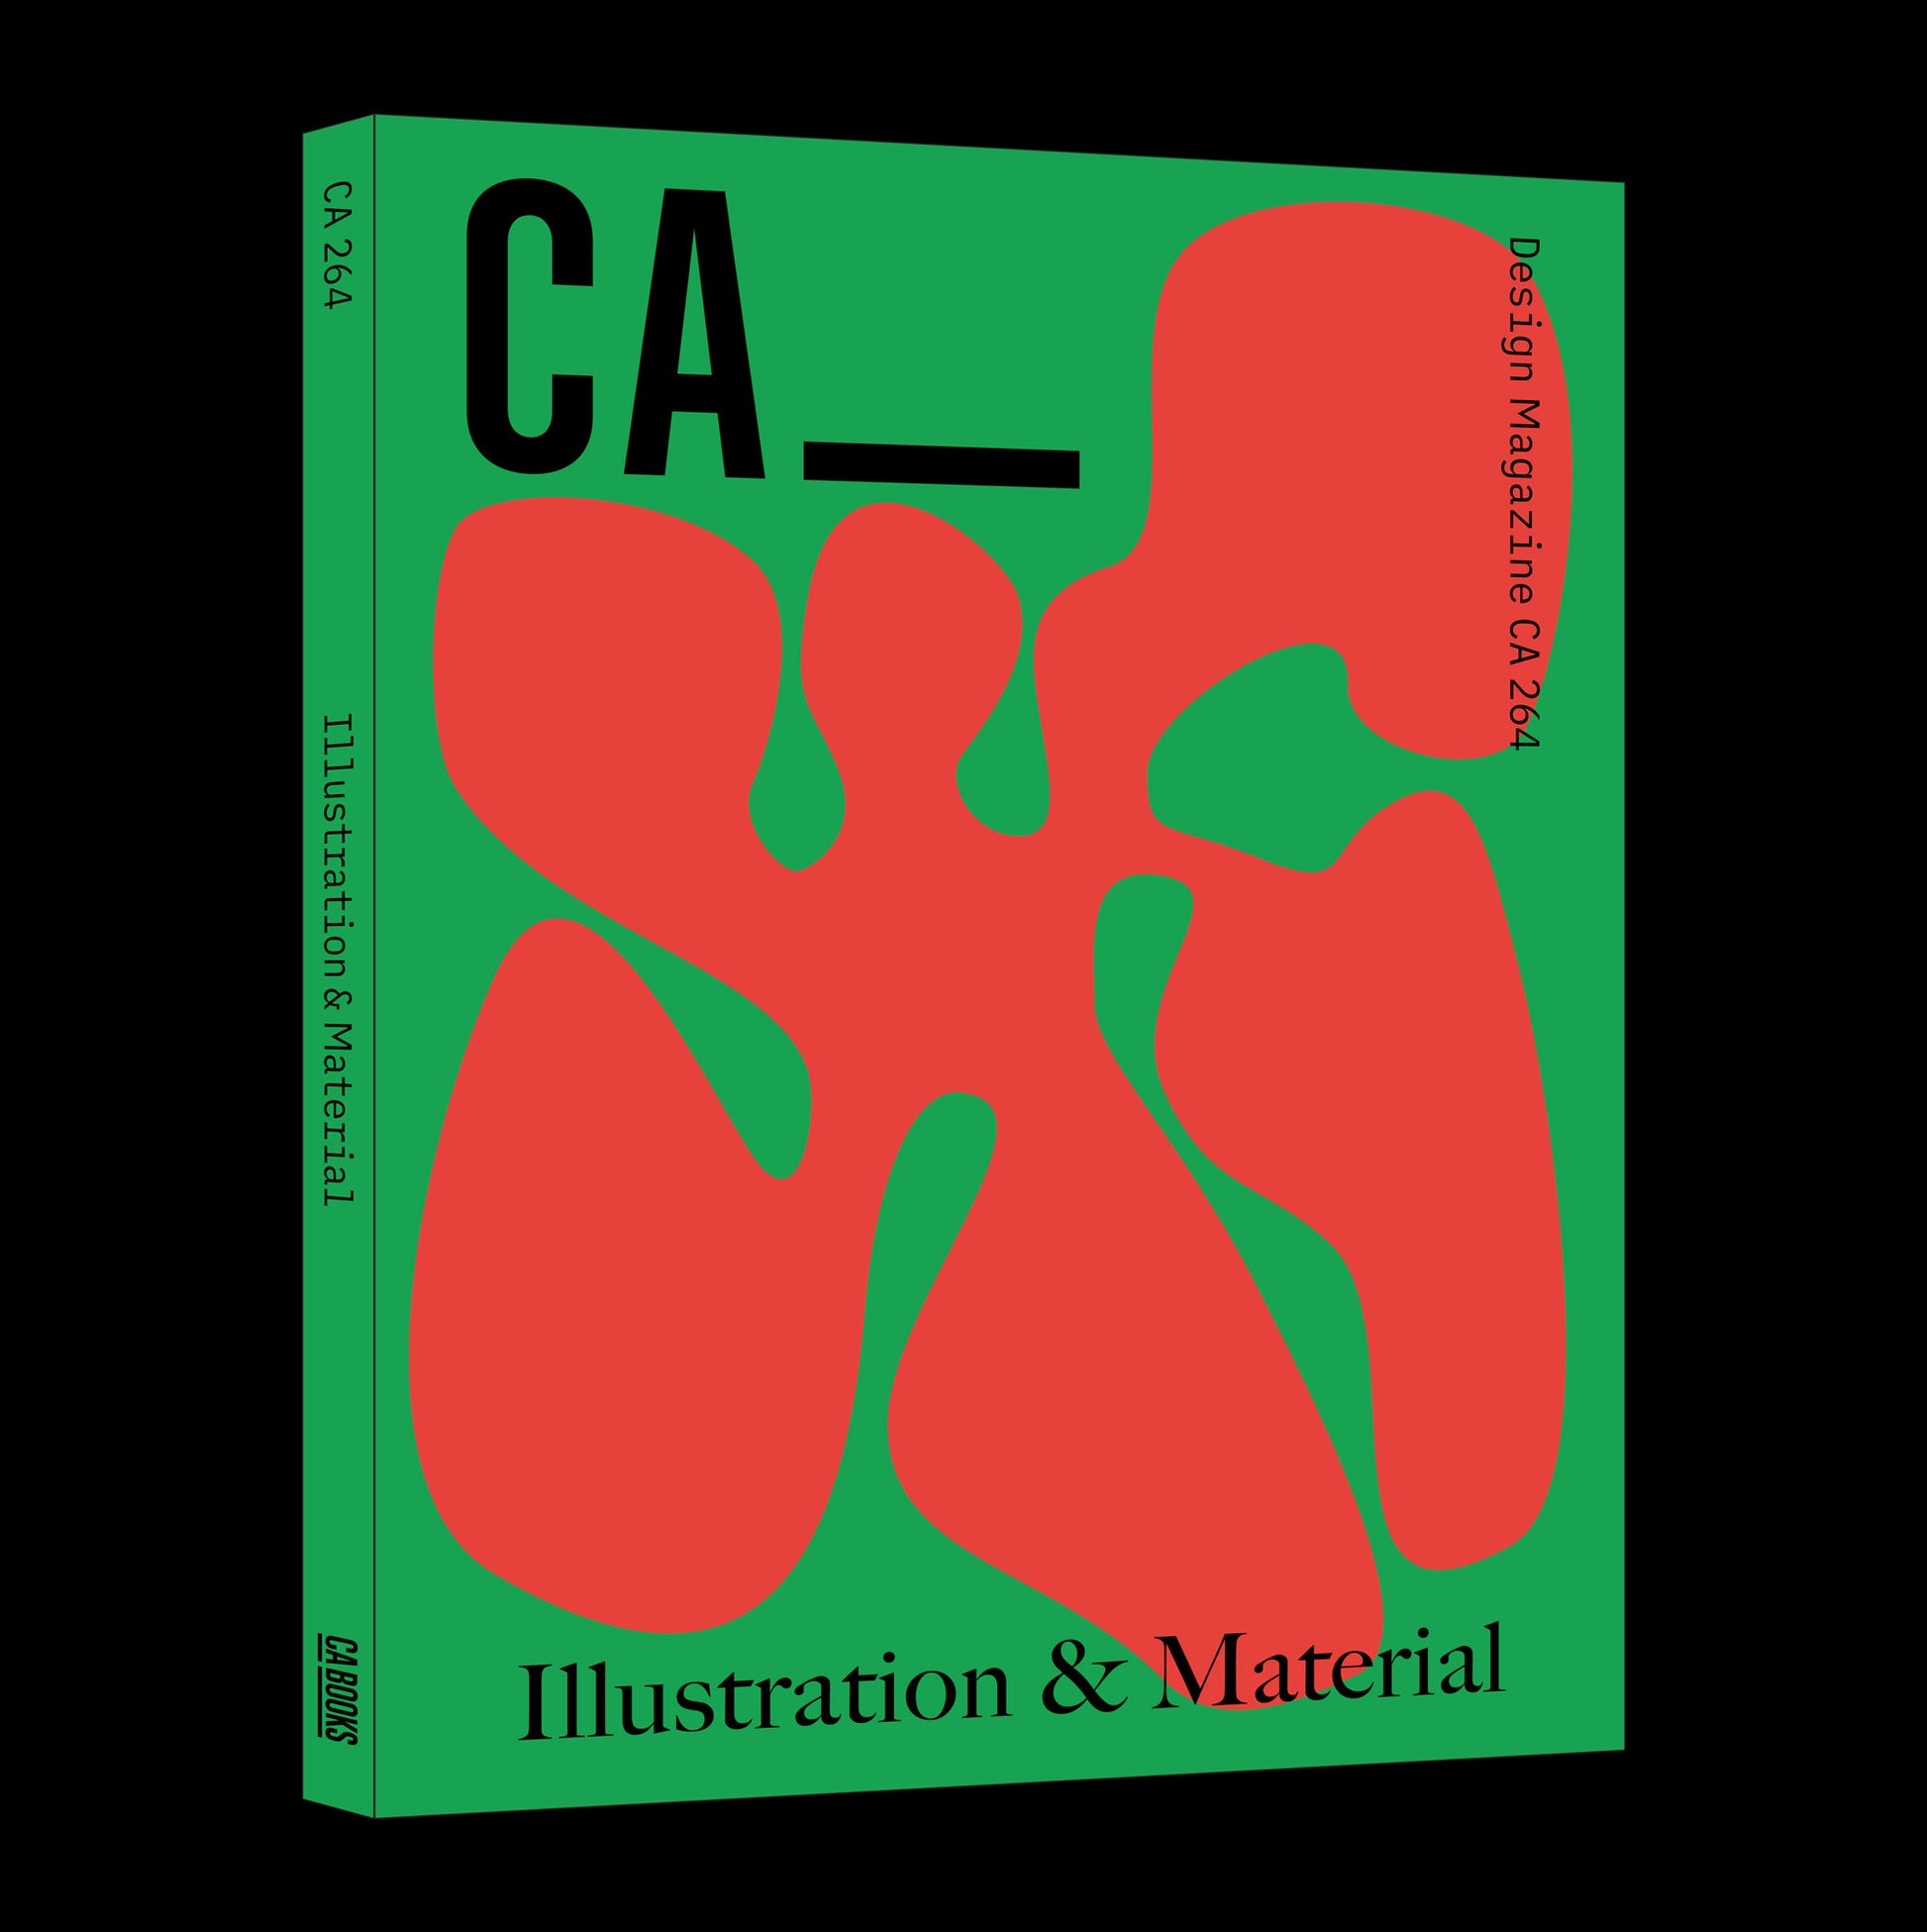 디자인 매거진 CA 264 일러스트레이션과 머티리얼 - CA Magazine 씨에이 매거진 - CAVA LIFE